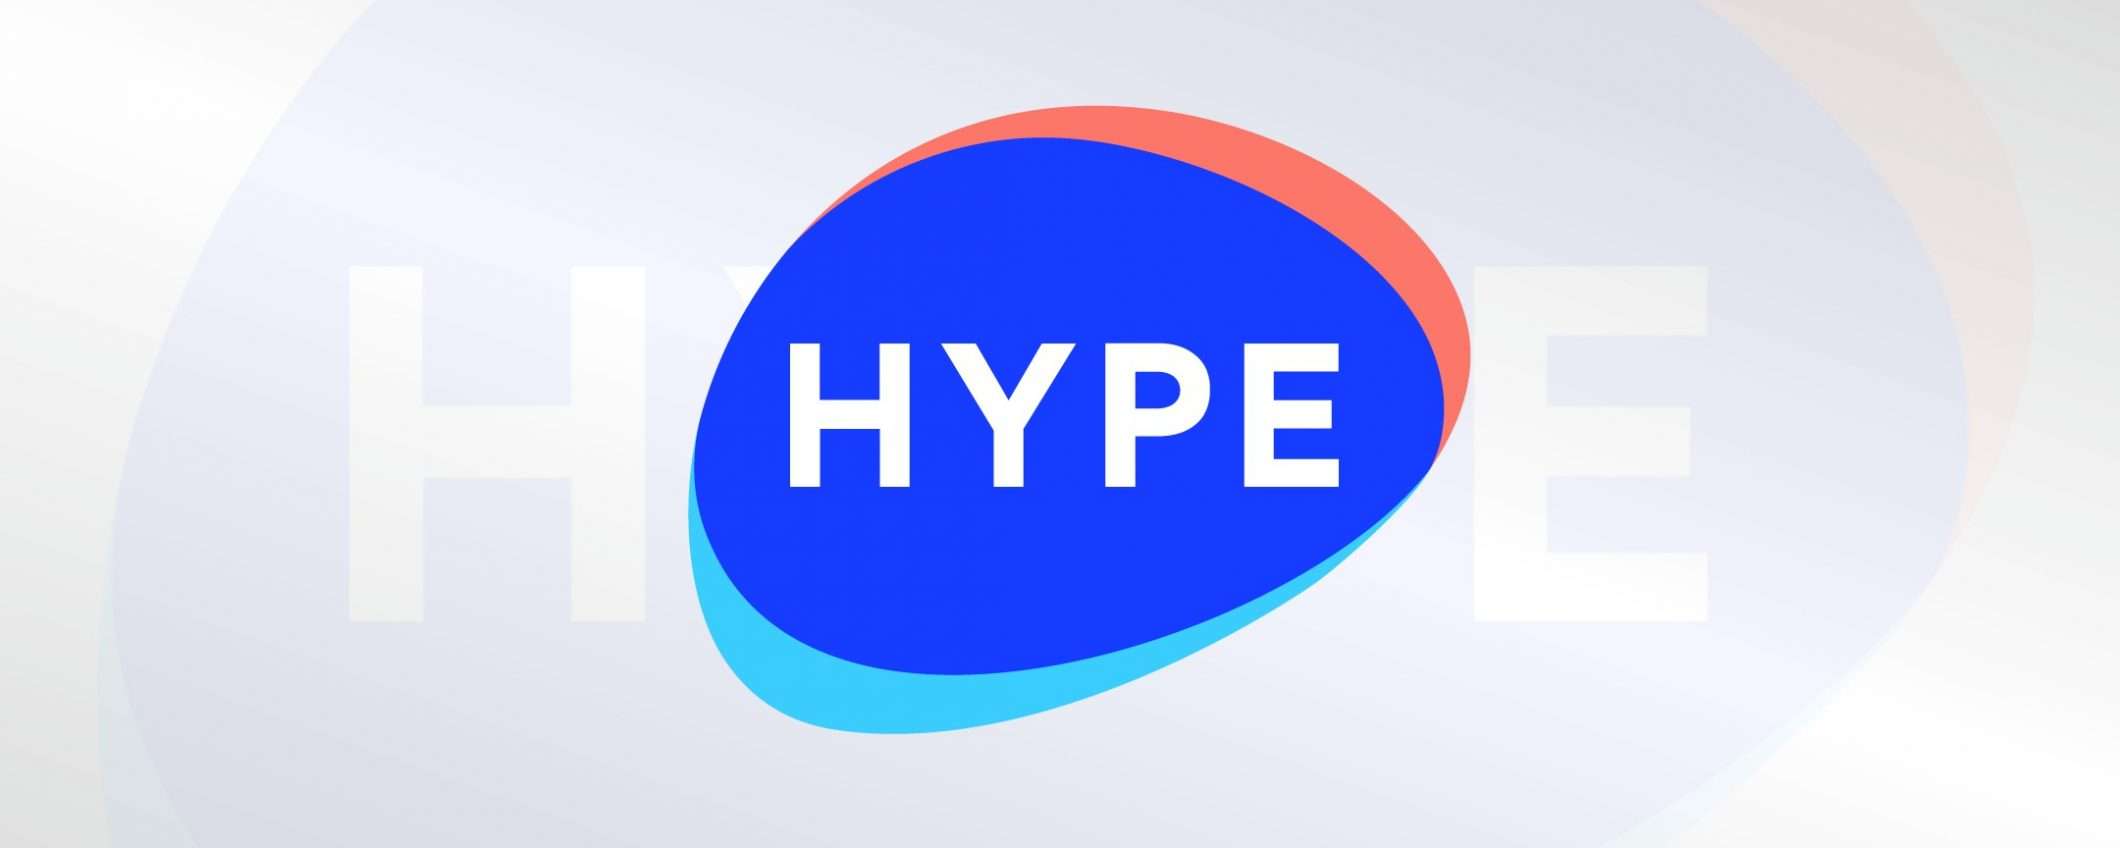 Attiva HYPE Premium: costi di attivazione nulli per un periodo limitato!